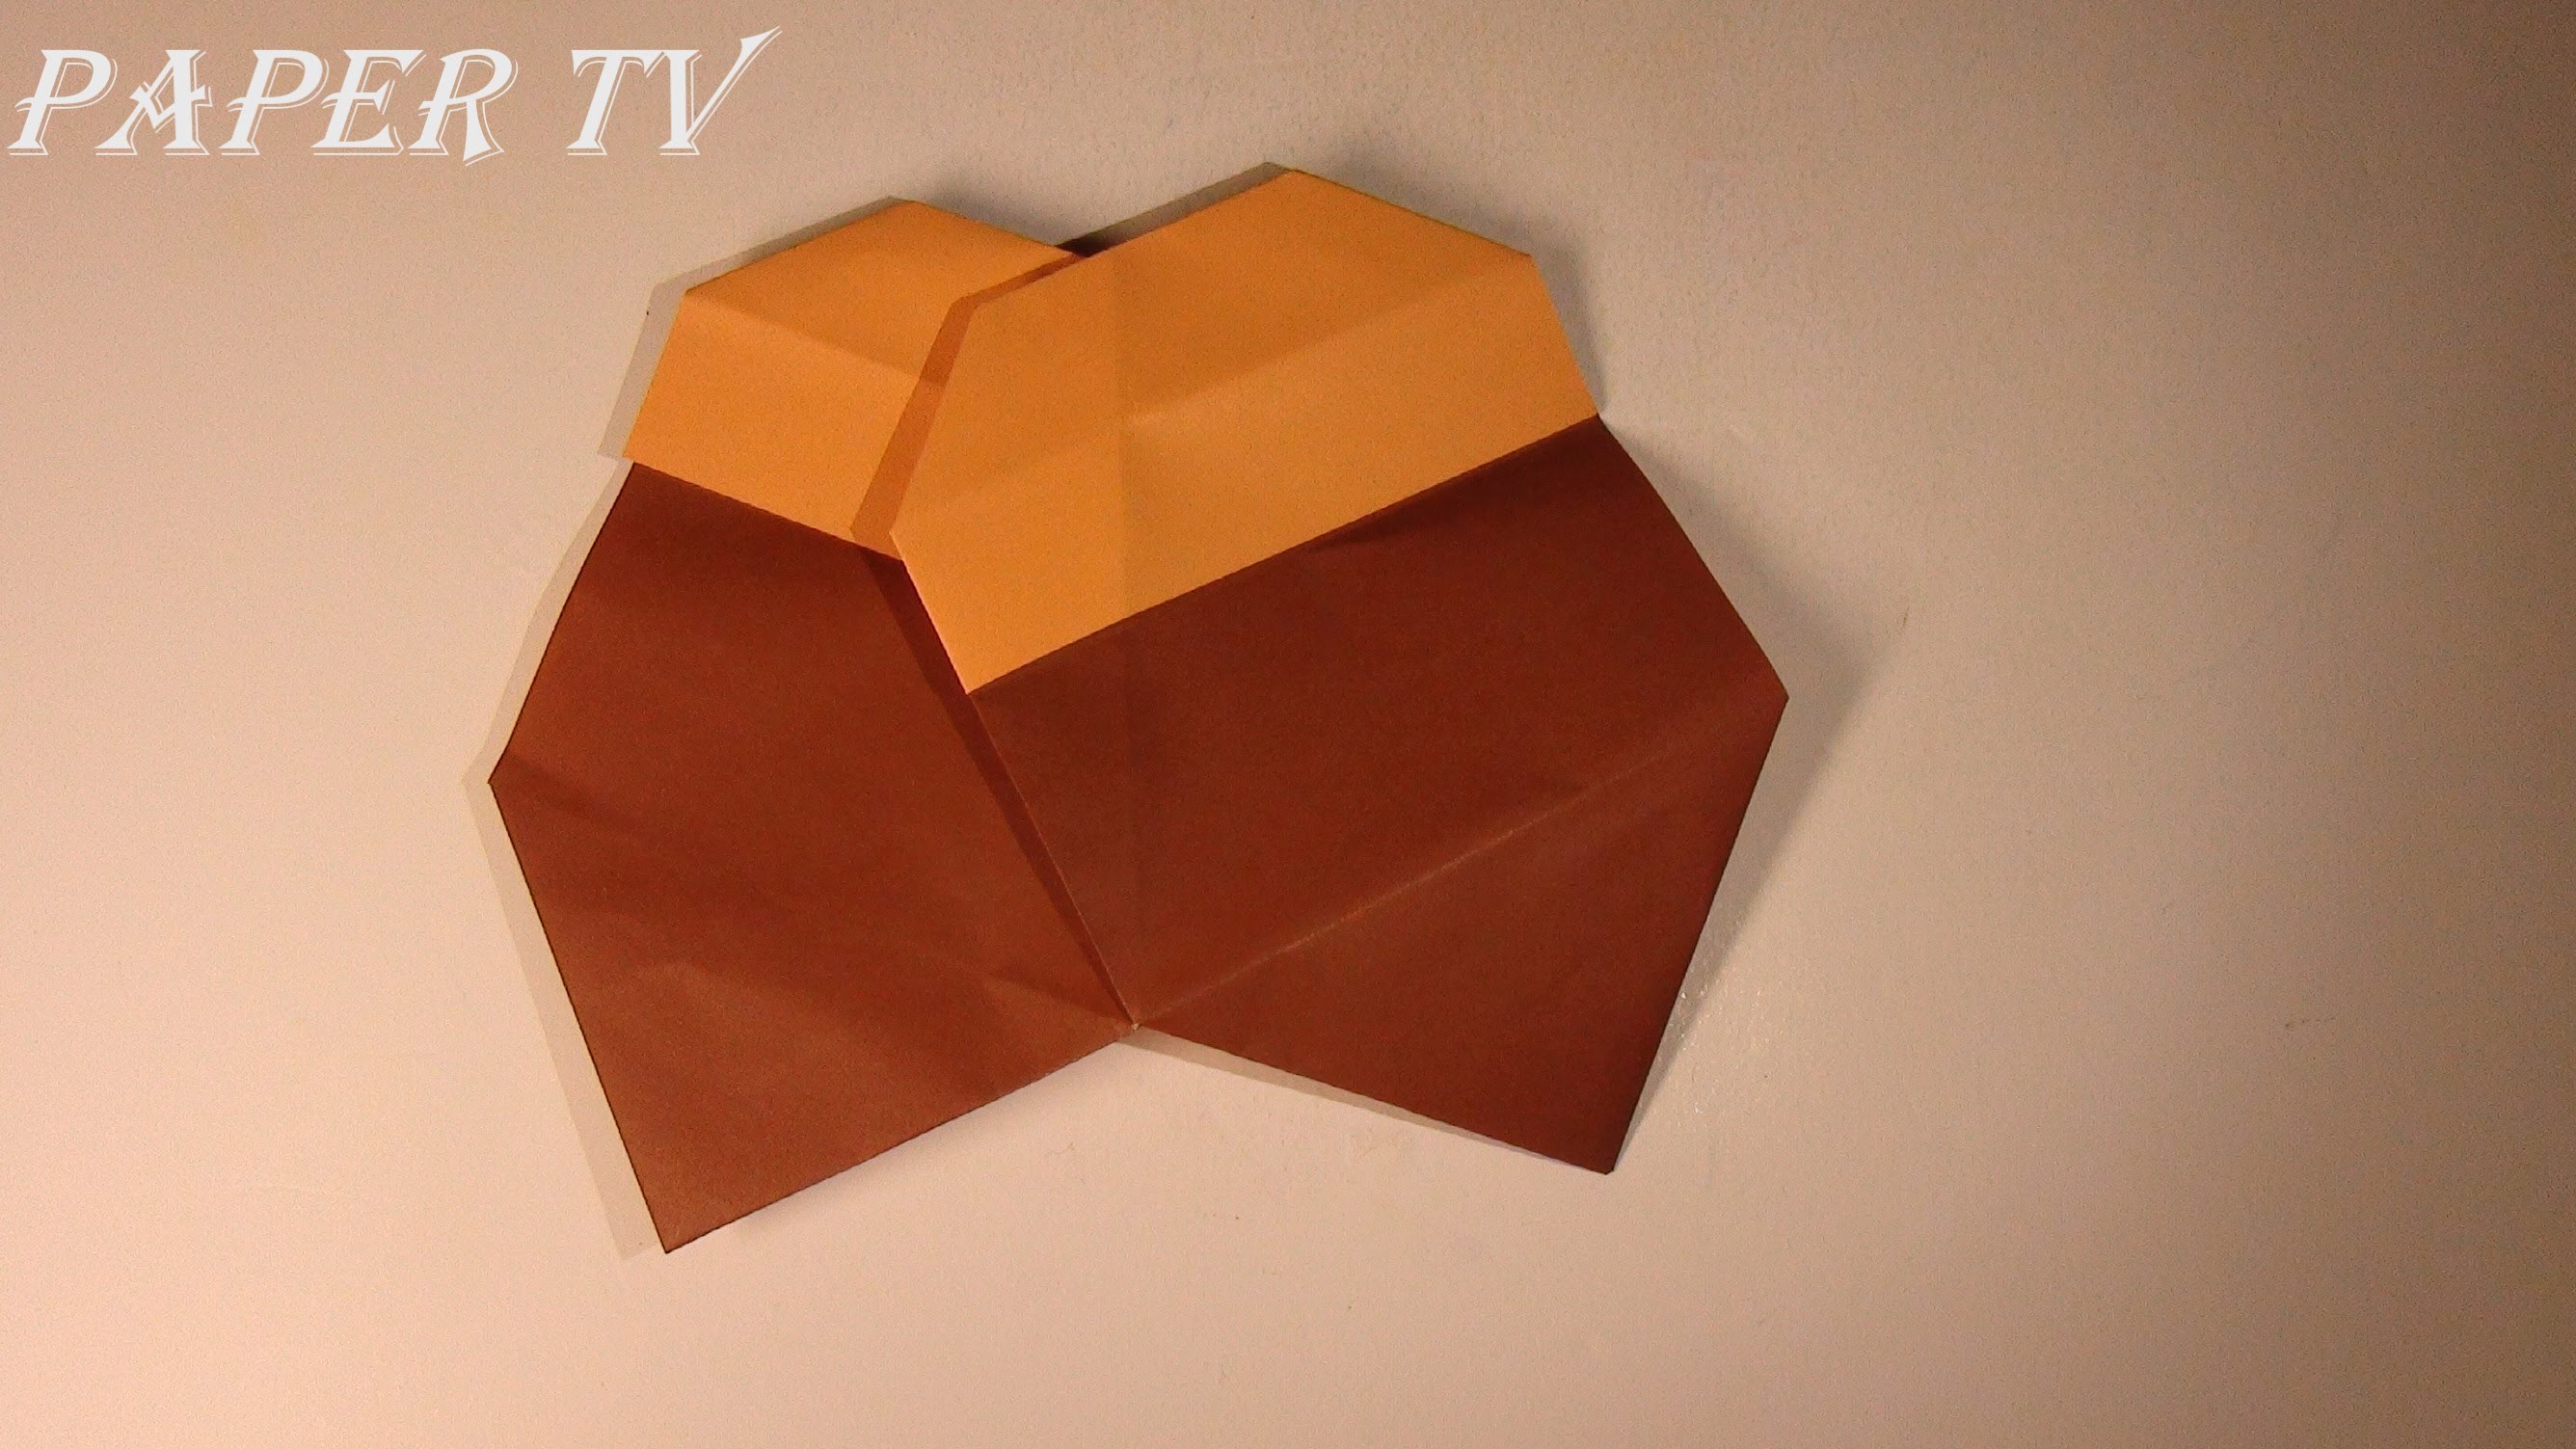 [Paper TV]  Origami acorn 도토리 종이접기 折り紙 どんぐり como hacer acorn  de papel bolota de papel